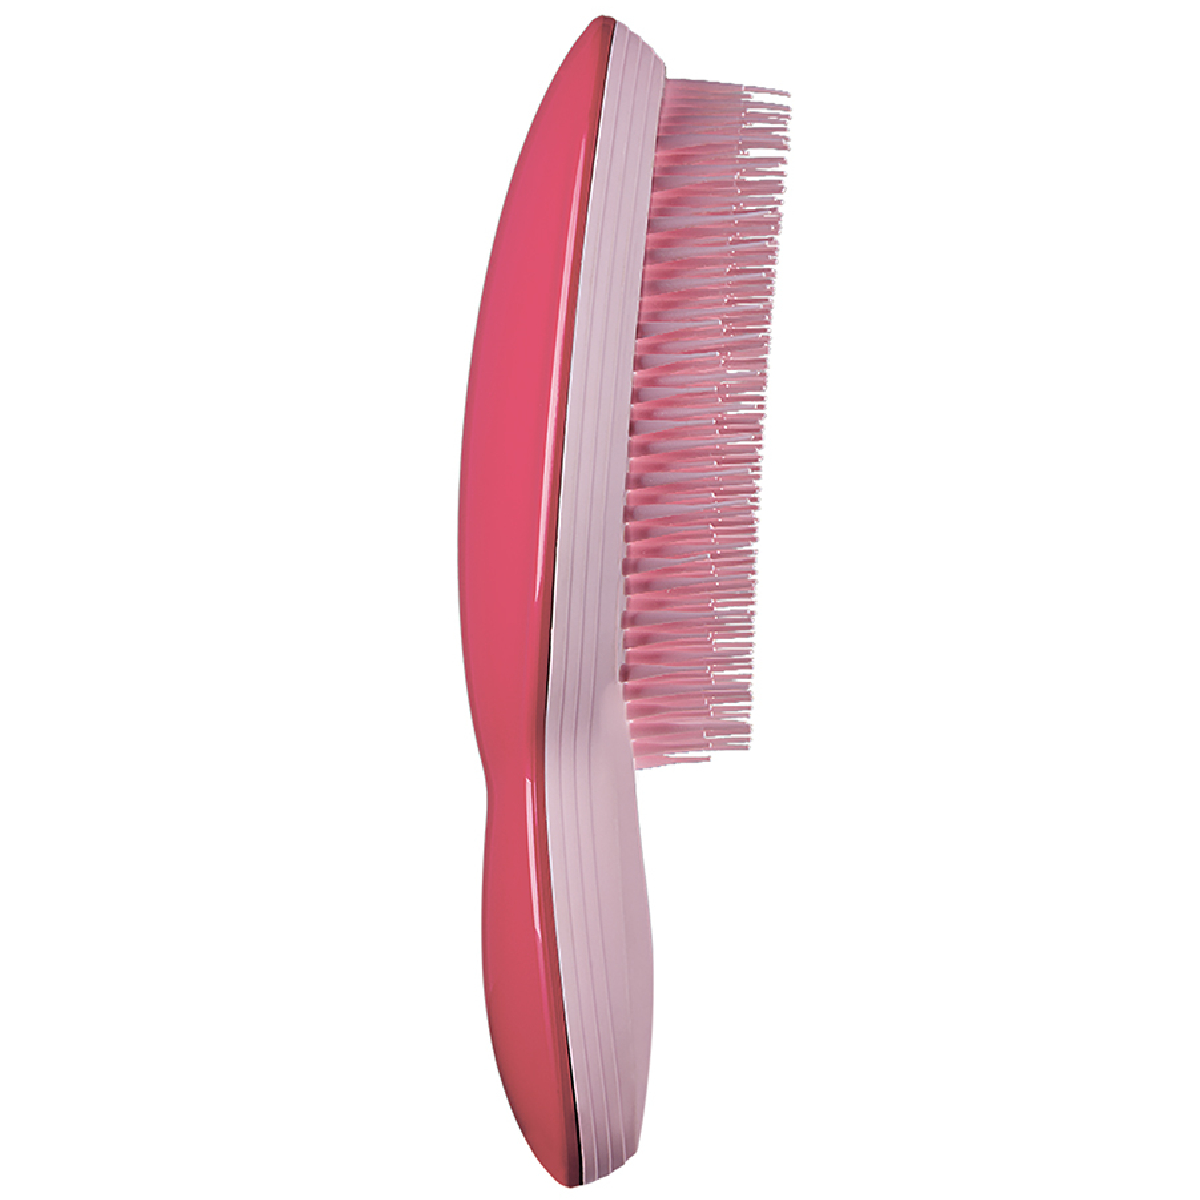 Tangle Teezer Расческа The Ultimate Pink, розовый, 1 шт (Tangle Teezer, The Ultimate) the ultimate pink расчёска для волос tangle teezer